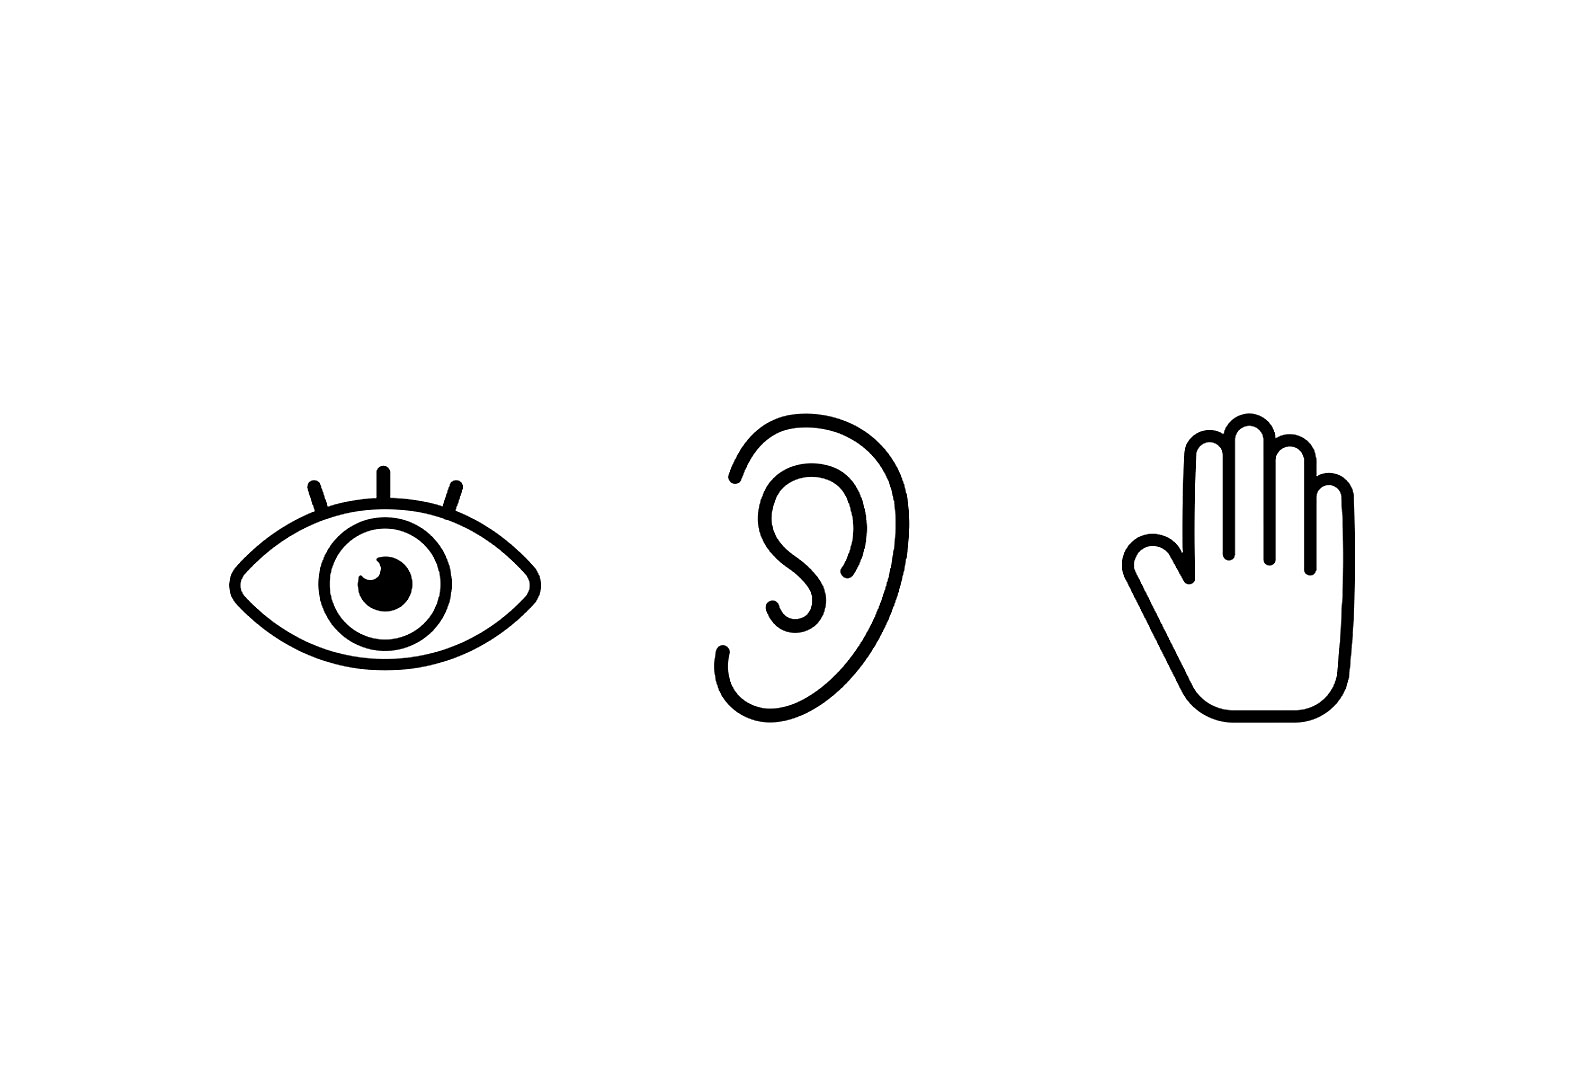 Τρία εικονίδια το ένα δίπλα στο άλλο, το αριστερό δείχνει ένα μάτι, το μεσαίο ένα αυτί και το δεξί ένα χέρι